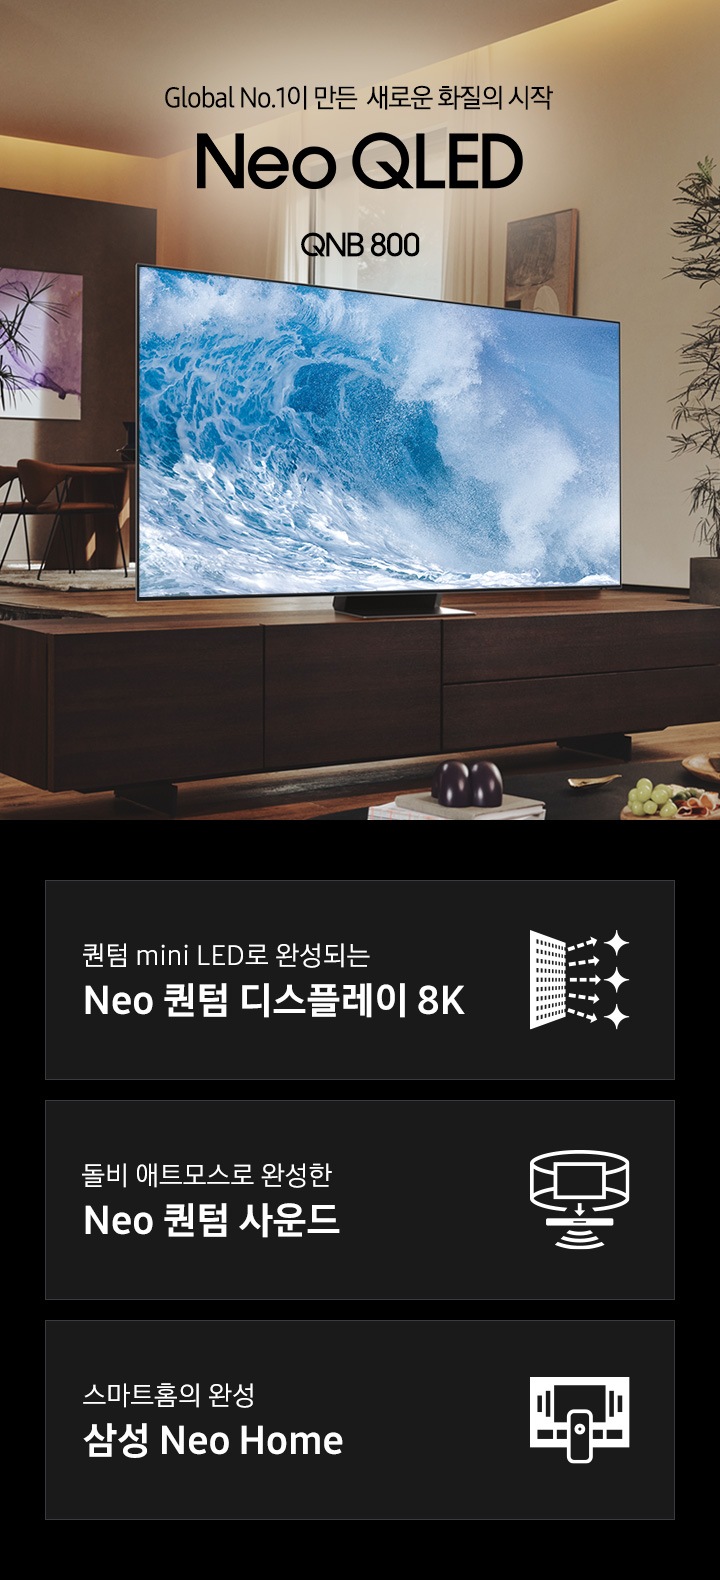 거실 서랍장 위에 TV 가 놓여있습니다. TV 화면에는 푸른색 파도 화면이 보입니다. Global No.1이 만든 새로운 화질의 시작 QNB800 KV 입니다. 하단 3 POD 에는 퀀텀 mini LED로 완성되는 Neo 퀀텀 디스플레이 8K 문구와 반짝이는 디스플레이 아이콘, 돌비 애트모스로 완성한 Neo 퀀텀 사운드 문구와 TV 아이콘에서 사운드 음파를 표현한 아이콘, 스마트홈의 완성 삼성 Neo Home 문구와 TV와 리모컨, TV 속 컨텐츠들을 표현한 아이콘이 있습니다.